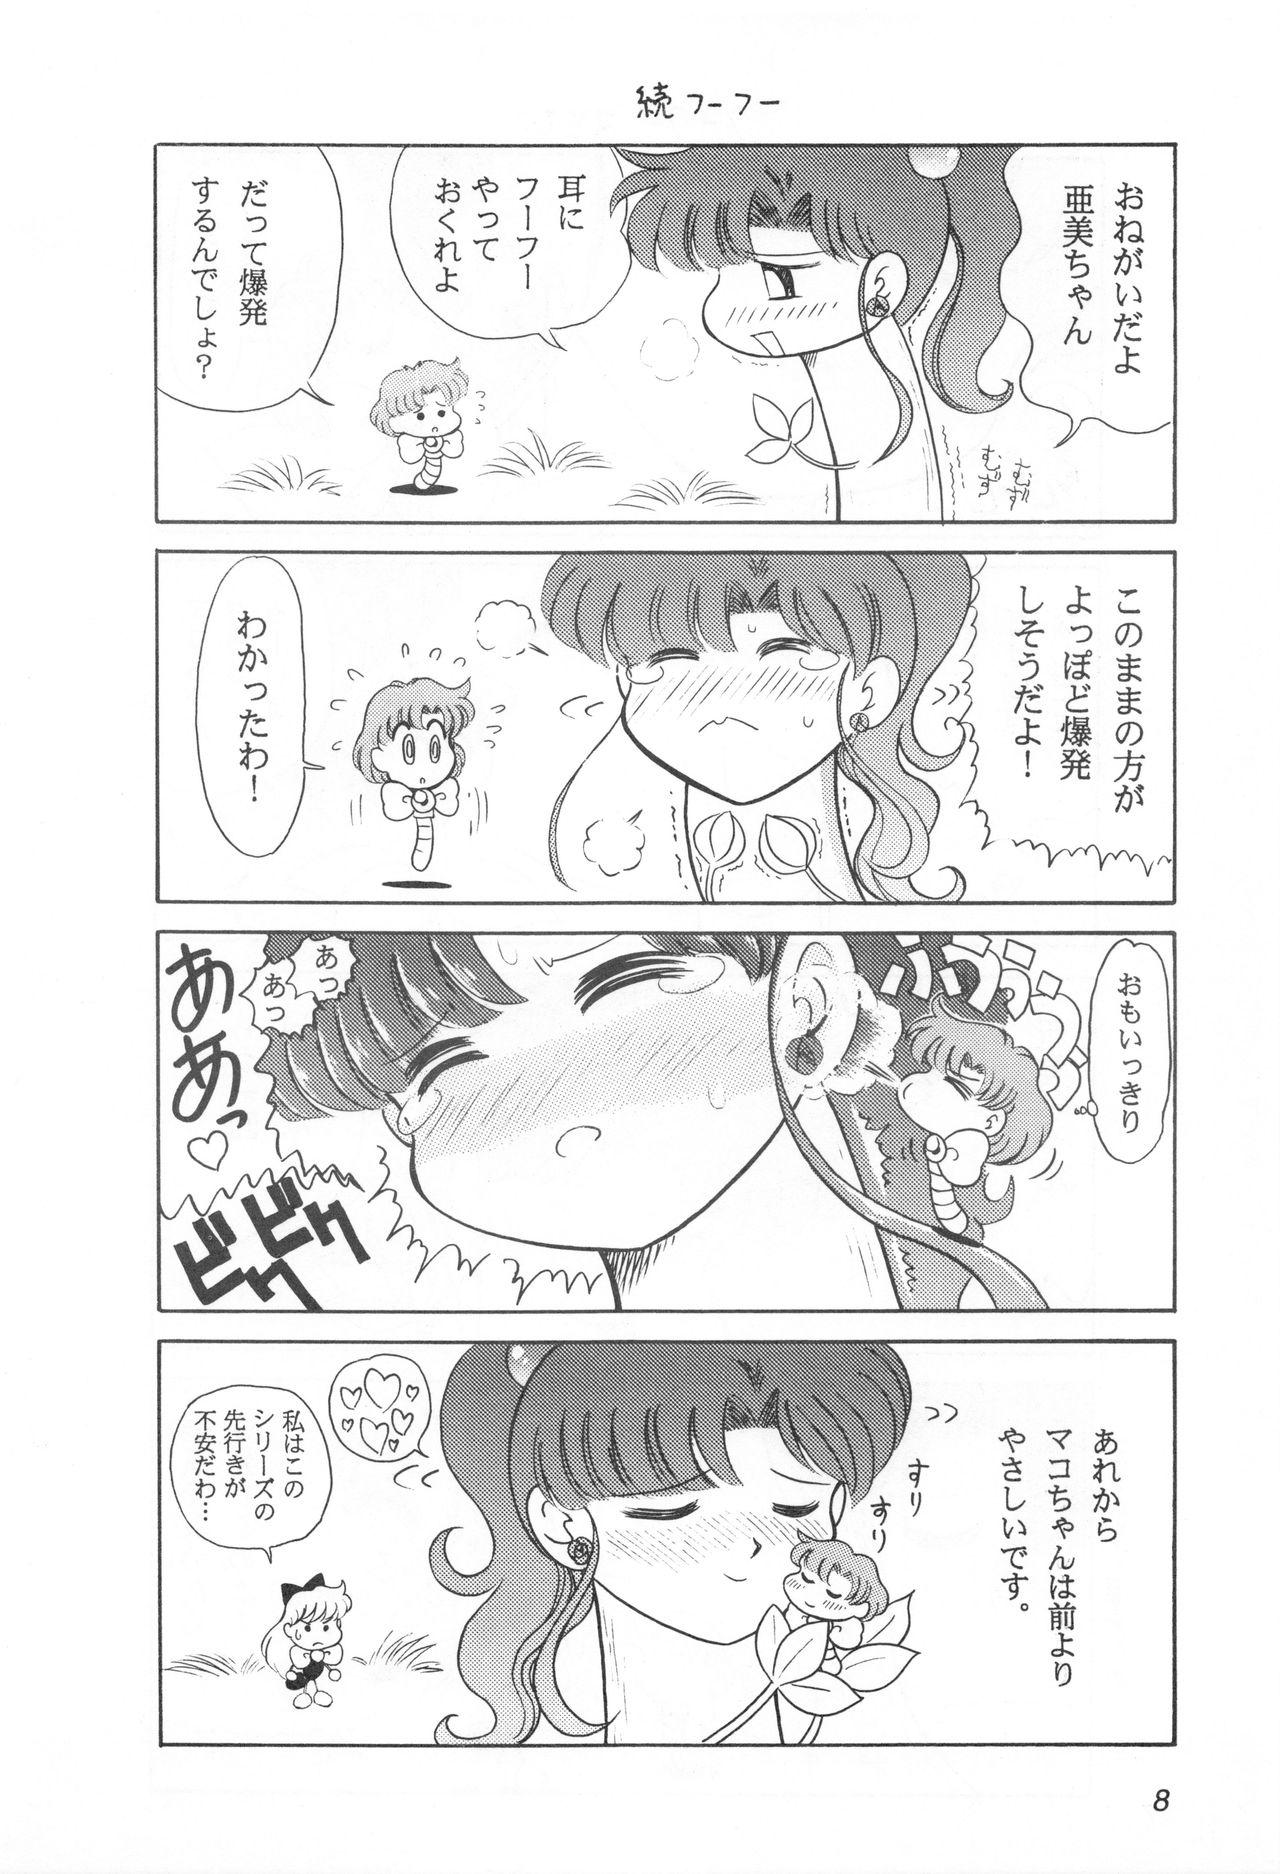 Playing Mimizu no Ami-chan Vol. 2 - Sailor moon Str8 - Page 7